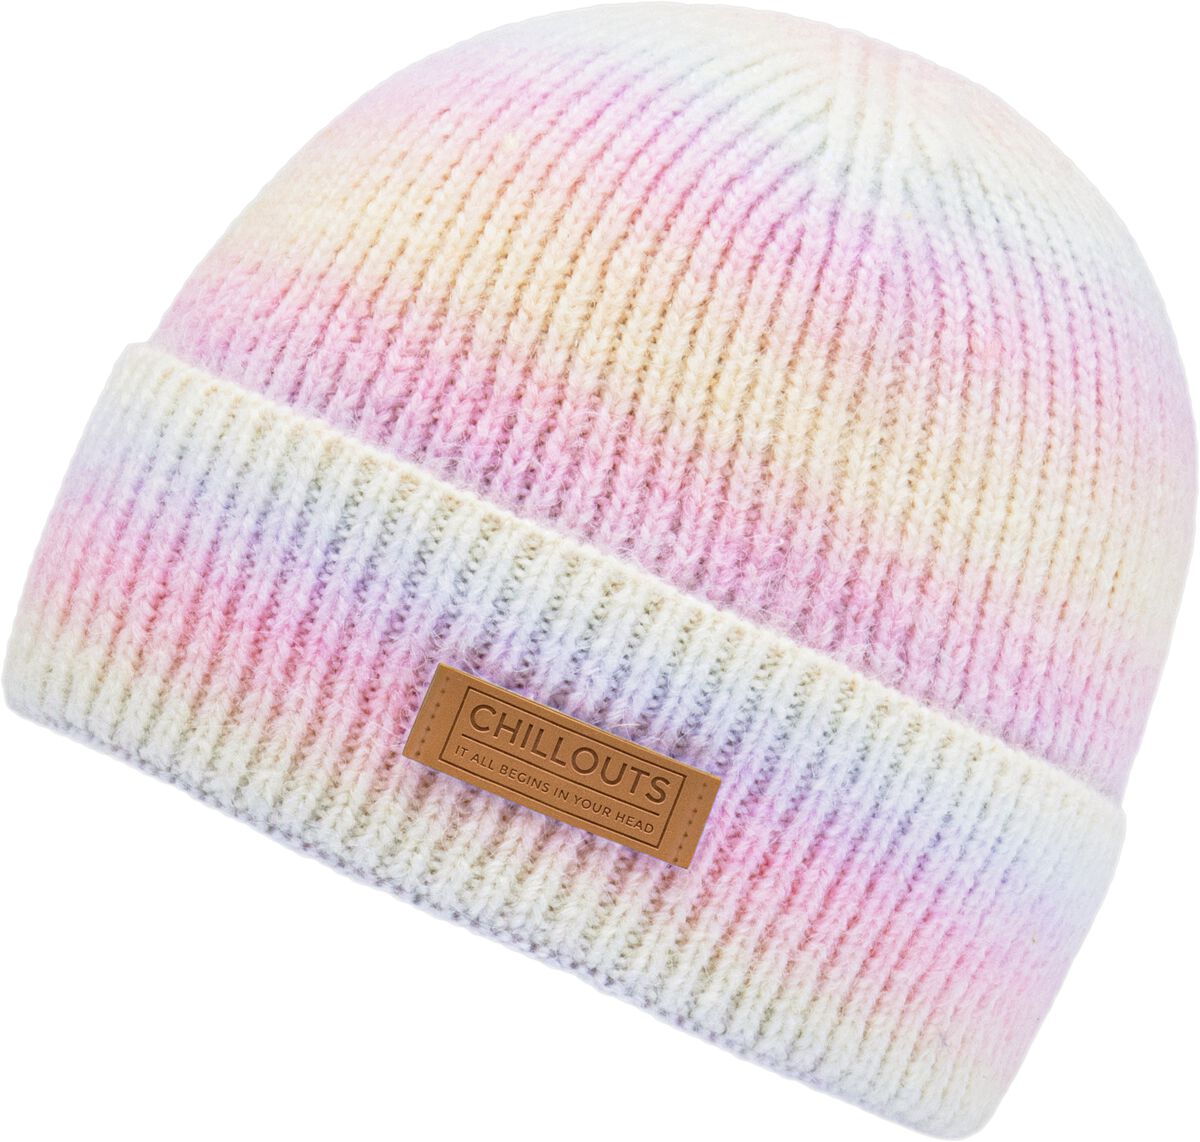 Image of Beanie di Chillouts - Sally hat - Unisex - multicolore